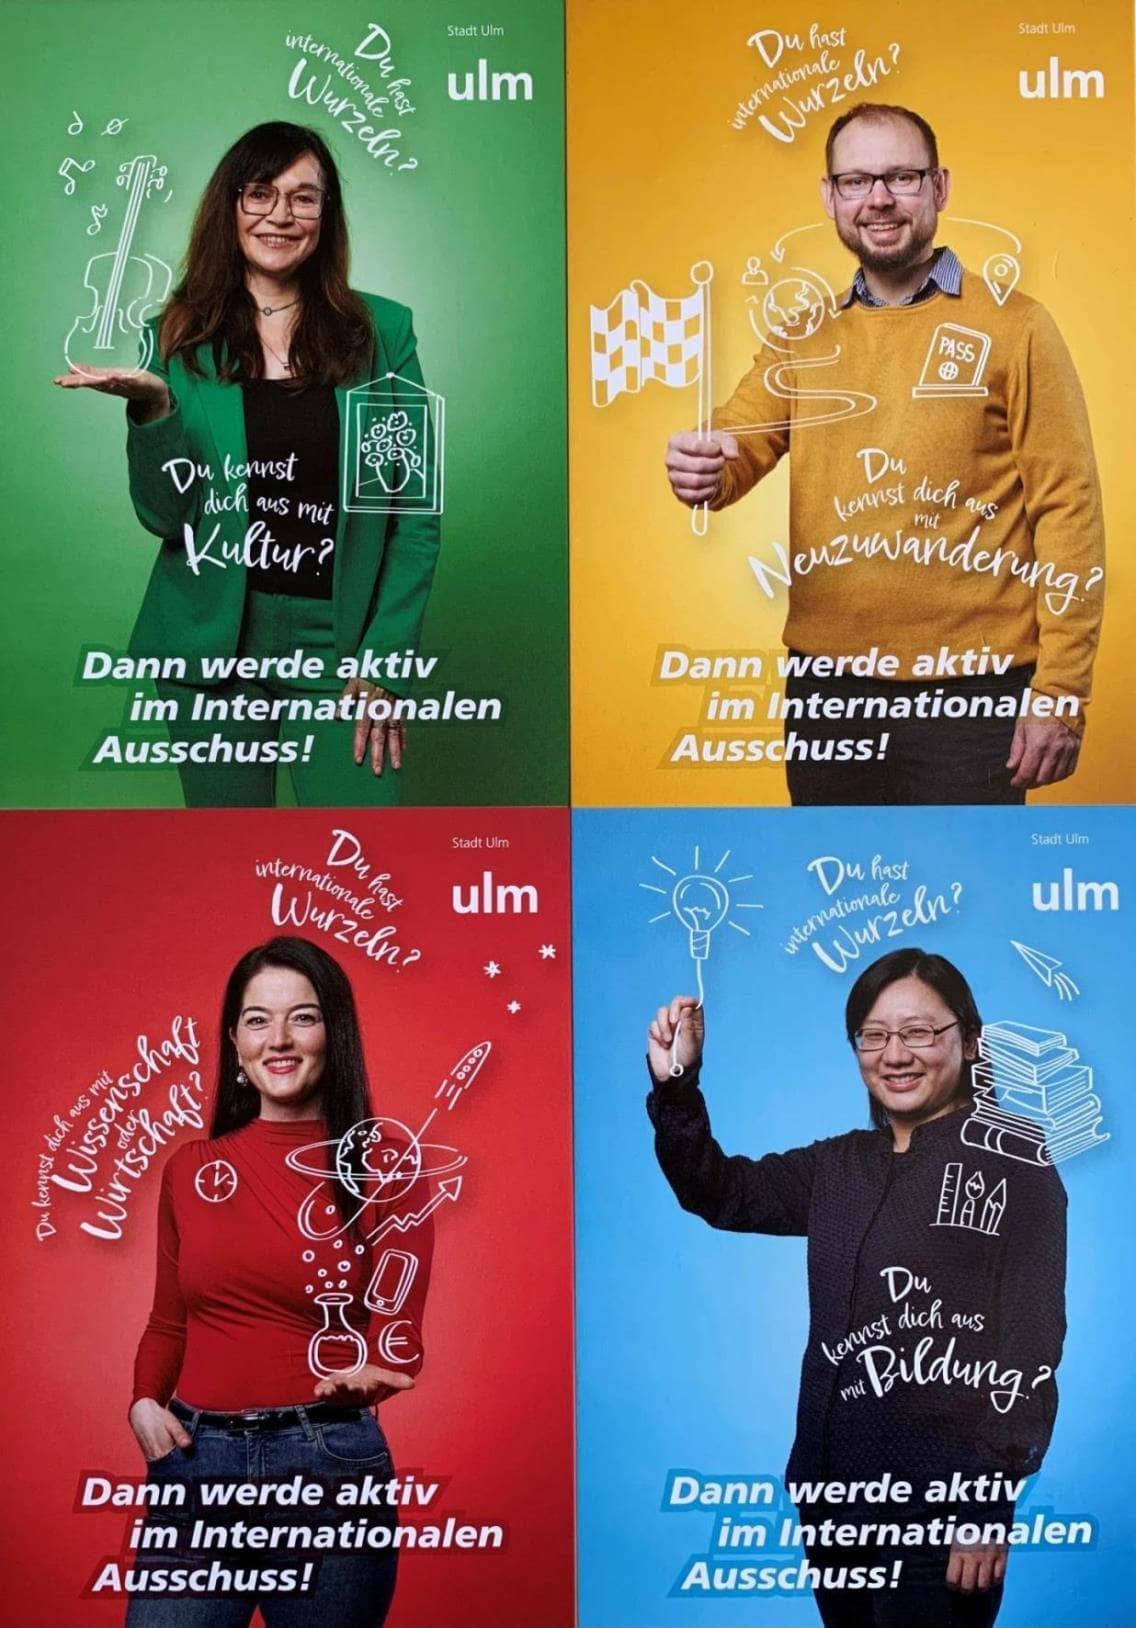 Auf diesem Foto sind vier Personen angeordnet, drei Frauen, ein Mann. Hinter jeder Person ist der Hintergrund anders eingefärbt in gelb, grün, blau und rot. Die Collage trägt den Slogan "Dann werde aktiv im Internationalen Ausschuss"